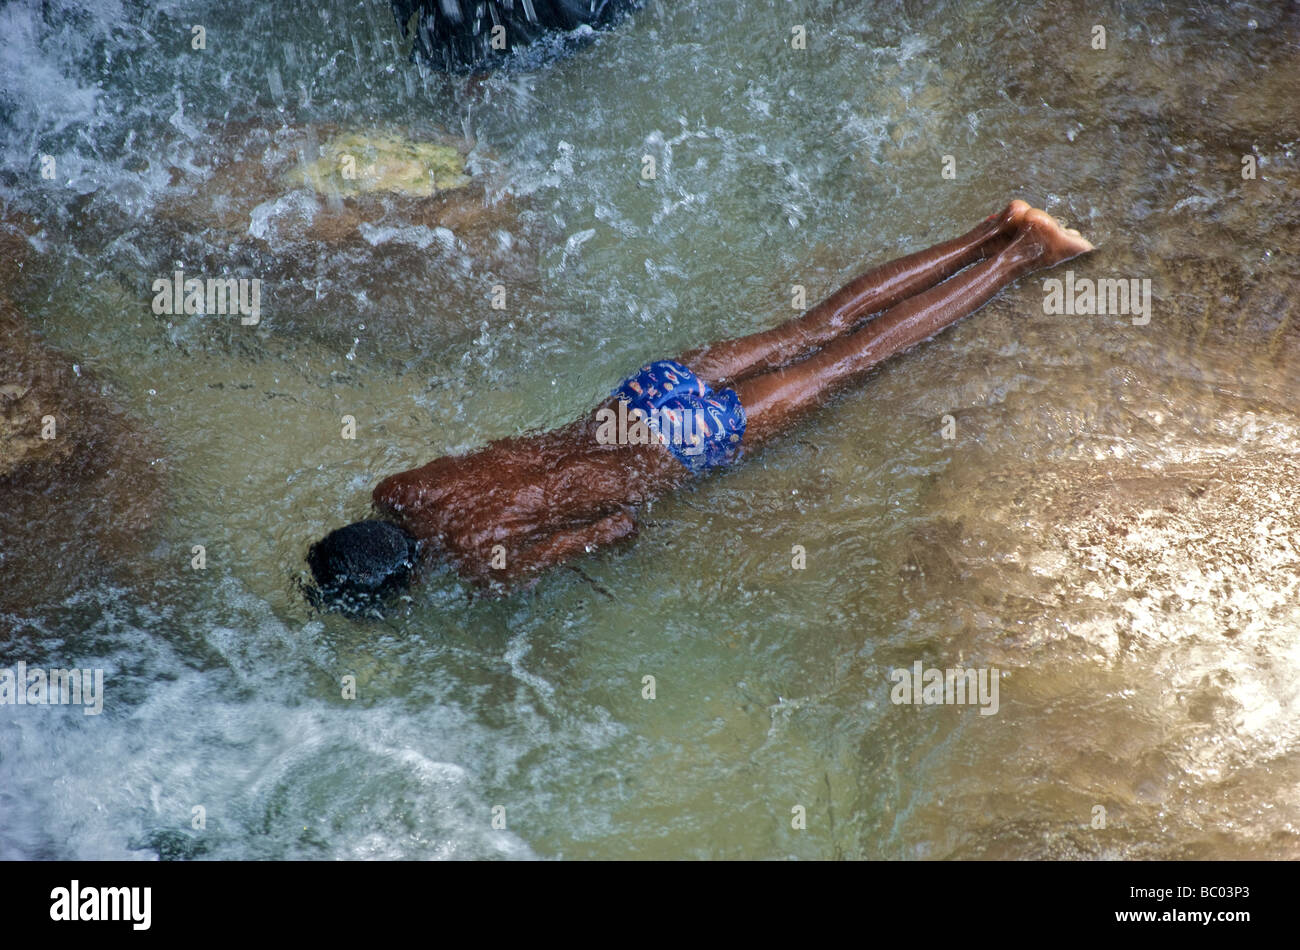 Un giovane ragazzo sommerge se stesso a faccia in giù in una piscina di acqua al di sotto di una cascata durante un festival voodoo in Haiti. Foto Stock